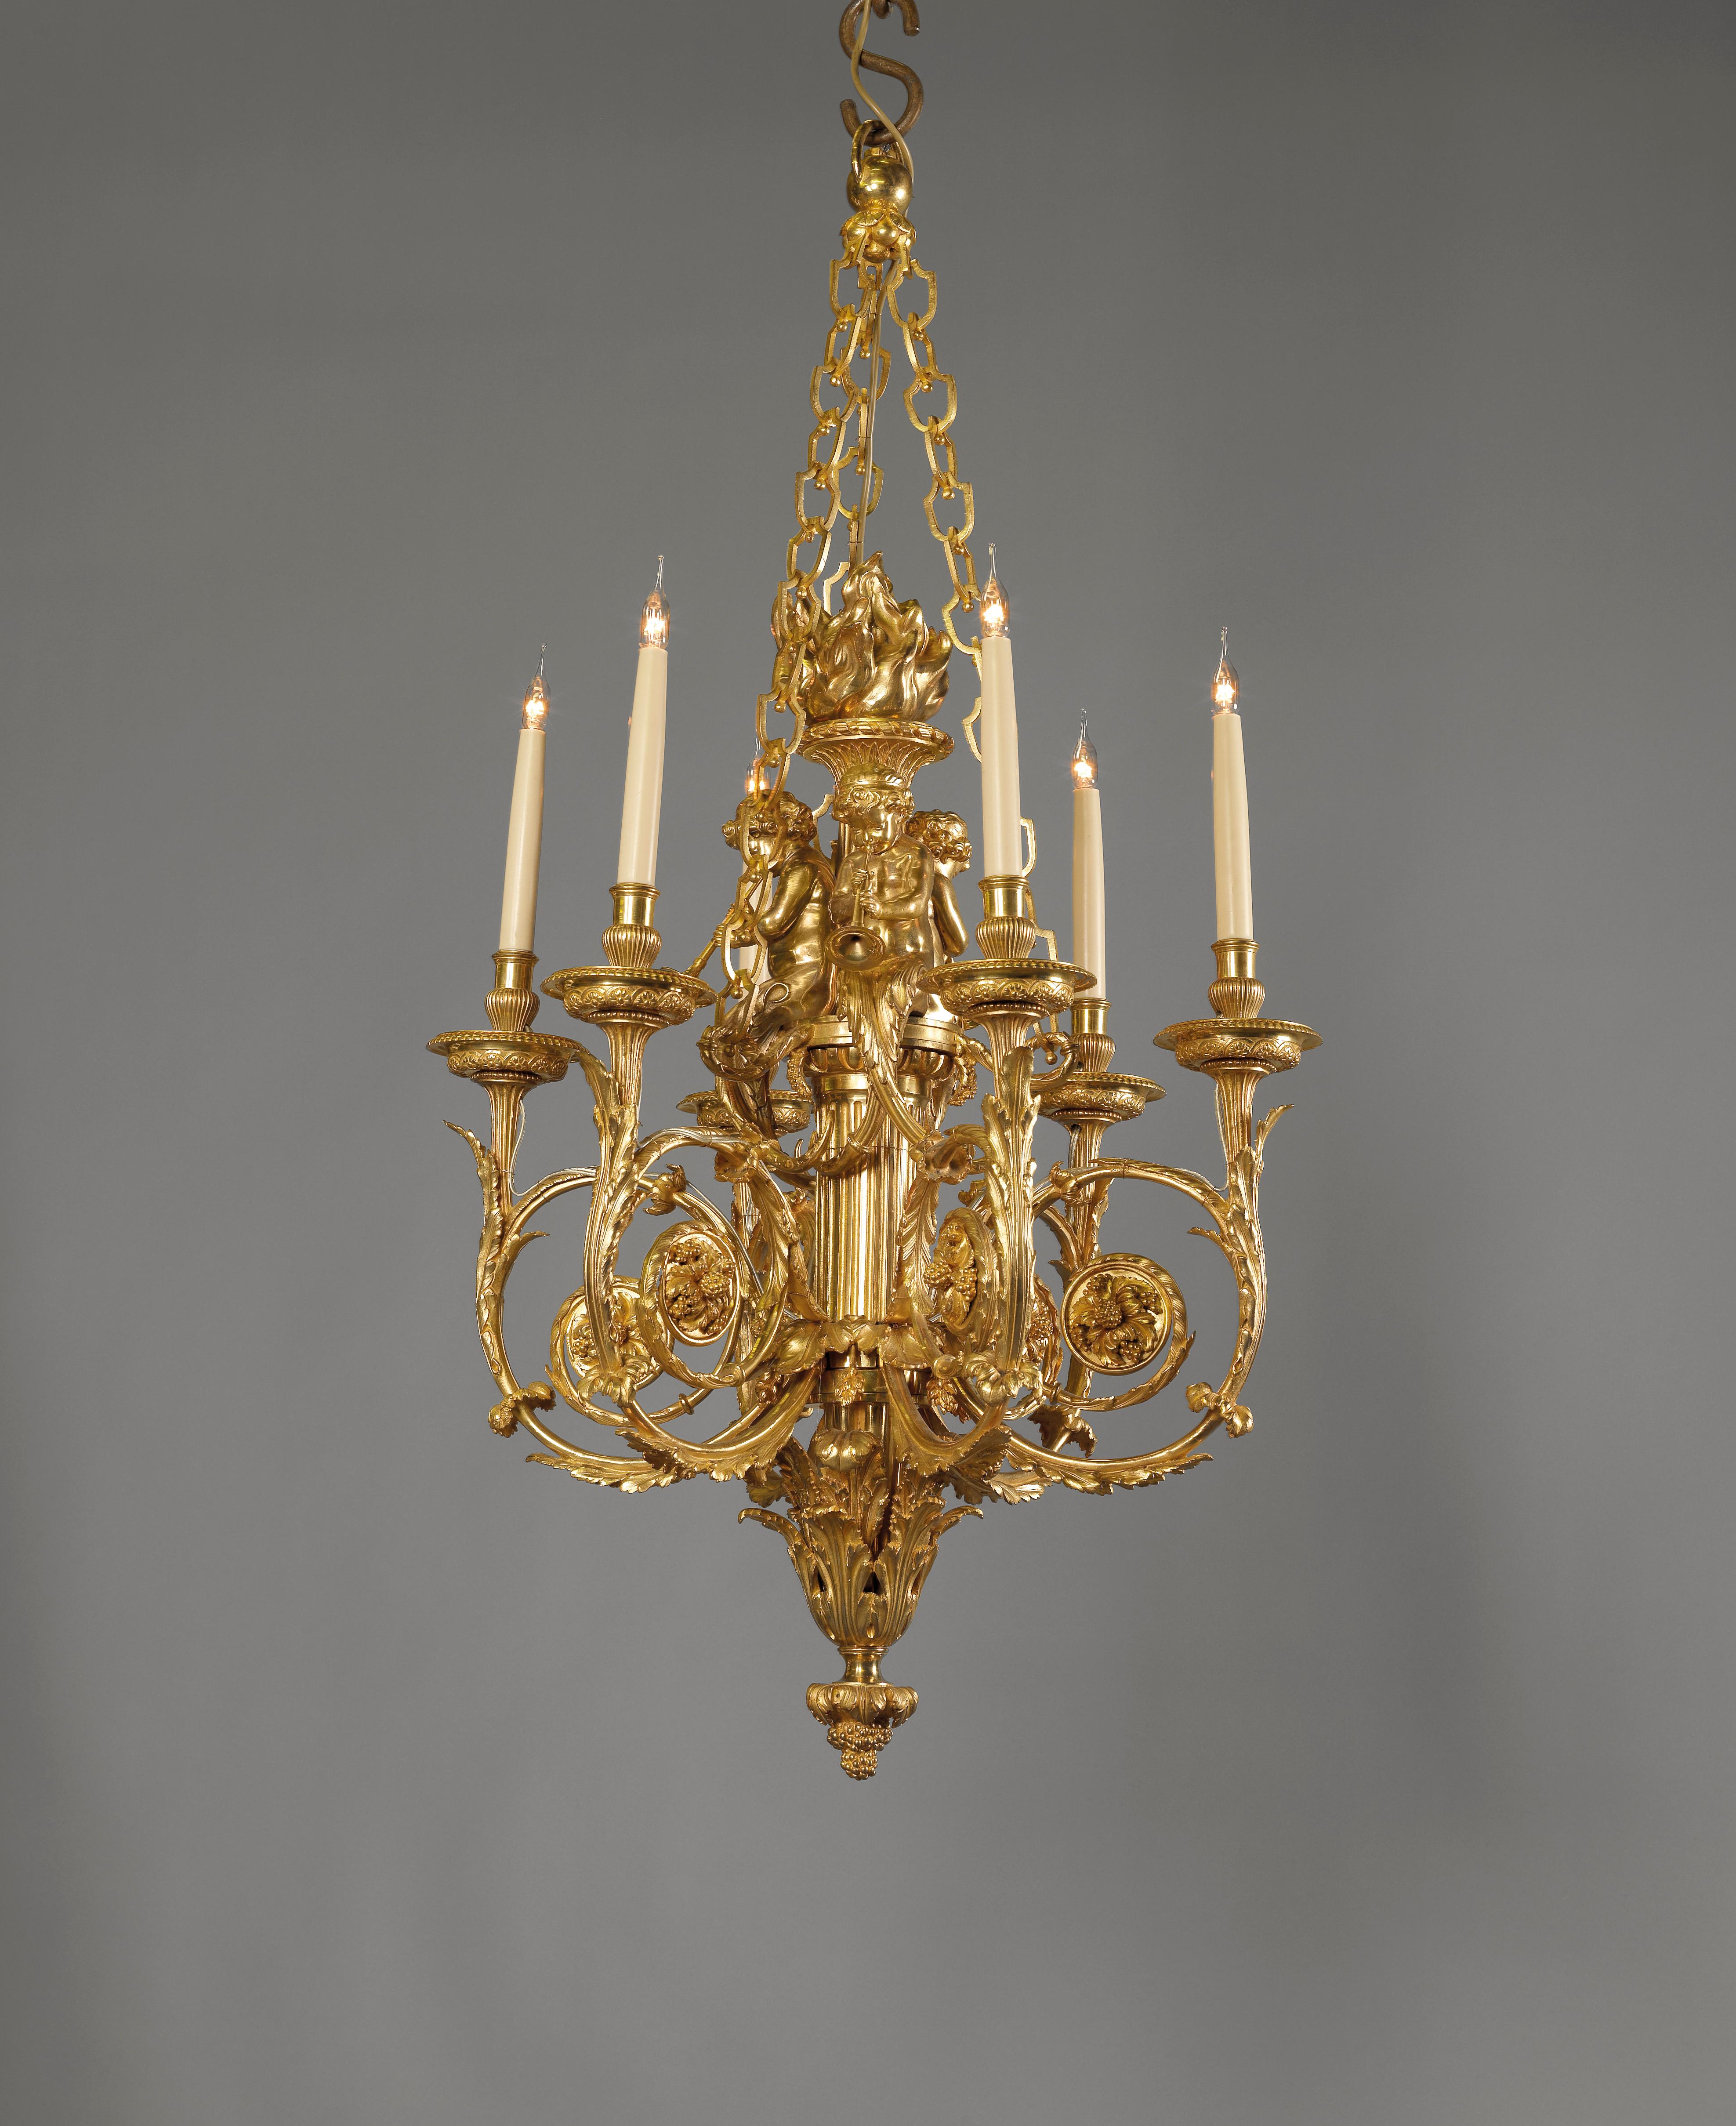 Feiner sechsflammiger Kronleuchter aus vergoldeter Bronze im Stil Ludwigs XVI., nach einem Modell von Pierre Gouthière für Marie Antoinette. Der Kronleuchter hat kunstvolle Akanthusarme, die von einem klassischen Fackelschaft ausgehen, der von drei